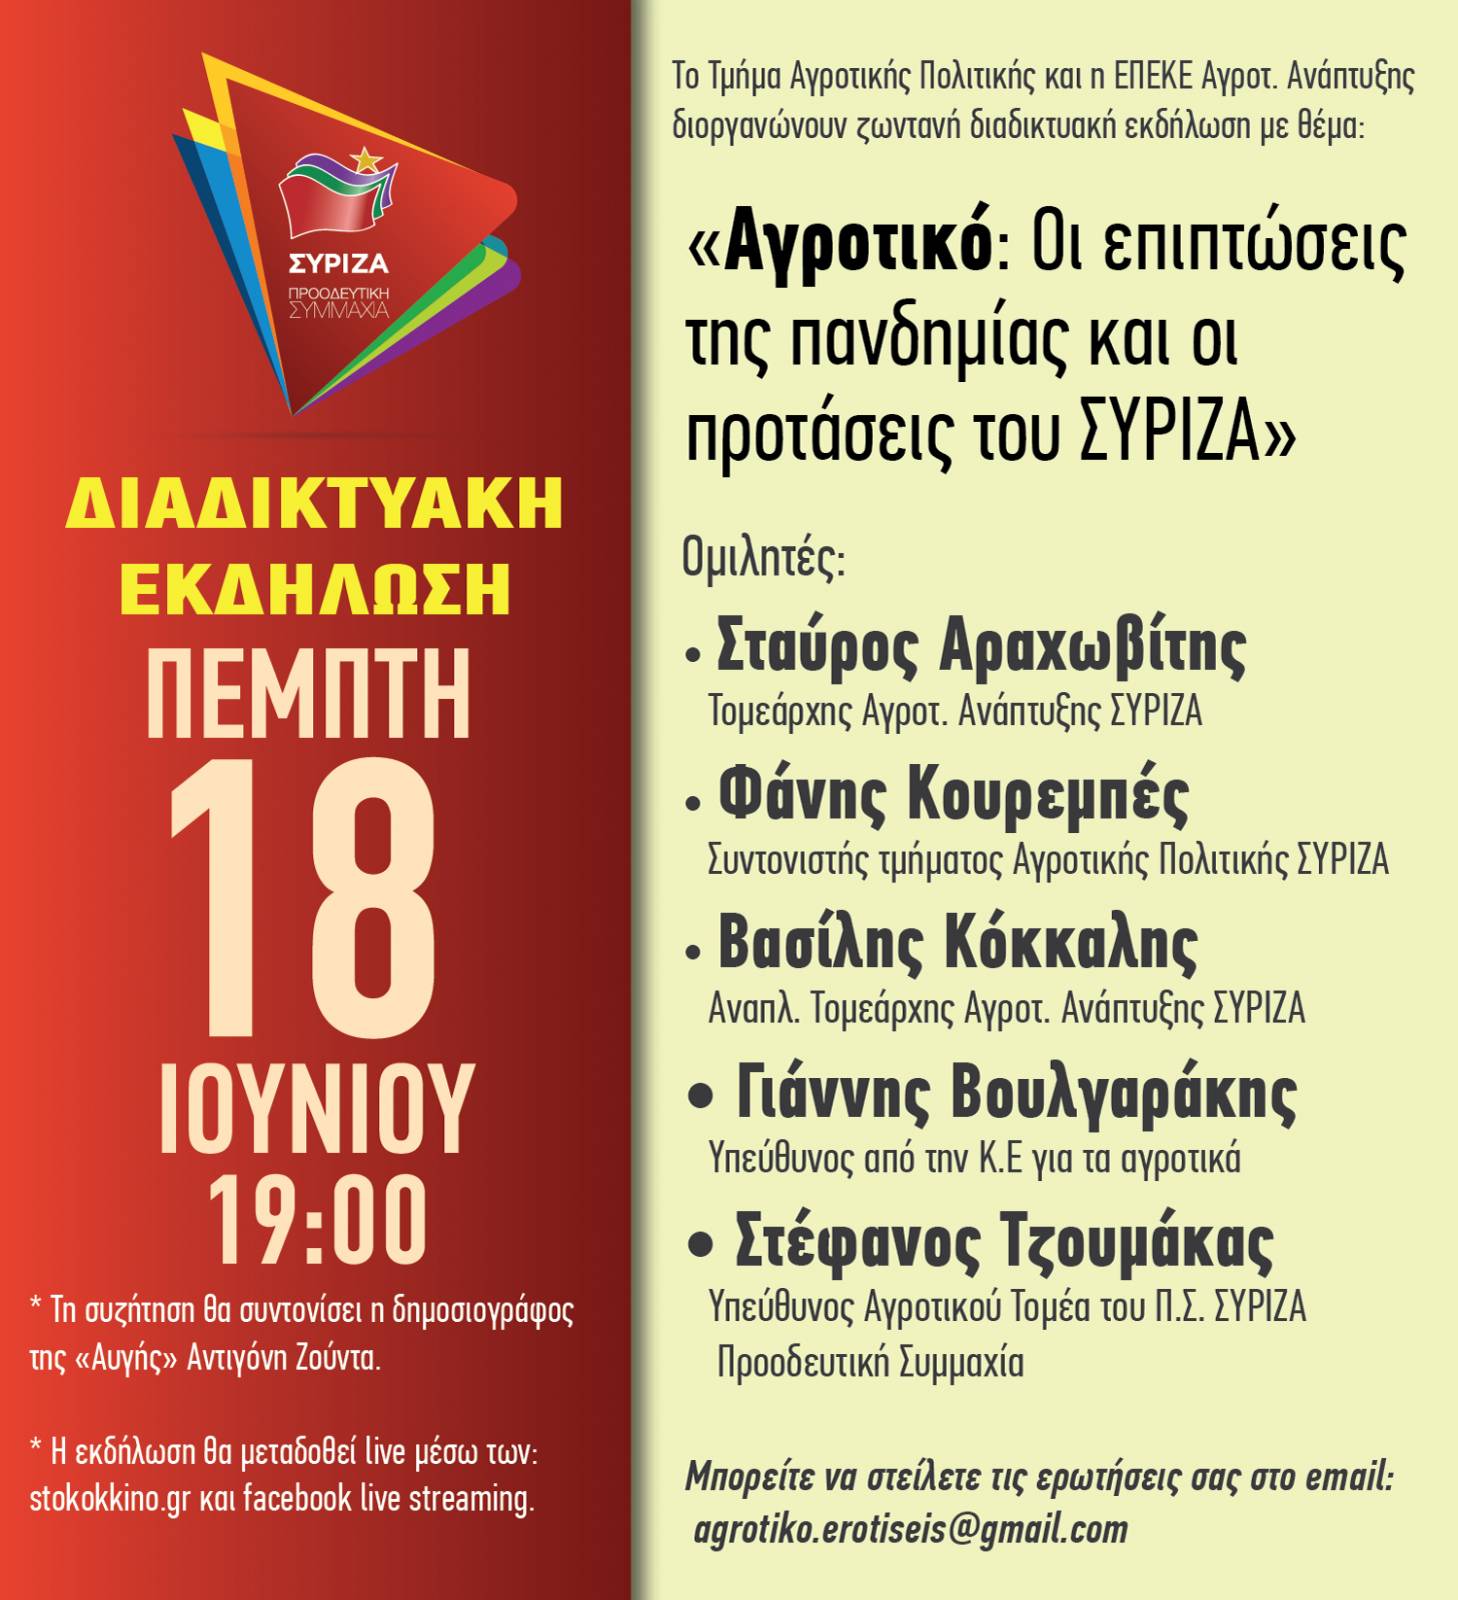 Διαδικτυακή εκδήλωση του Τμήματος Αγροτικής Πολιτικής ΣΥΡΙΖΑ την Πέμπτη 17 Ιουνίου